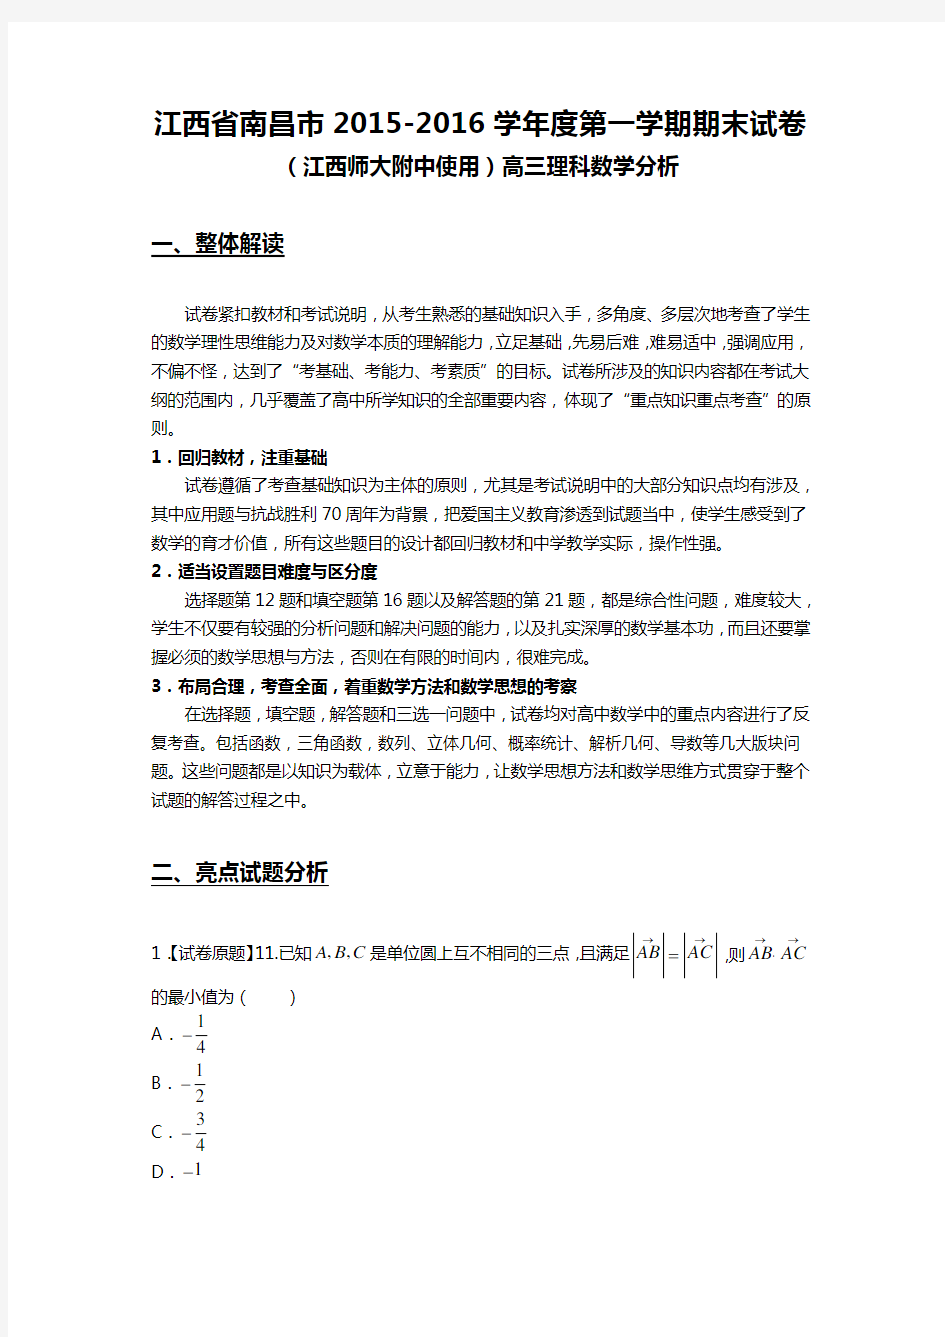 小码哥广州iOS开发培训课程WWW.520it.COM之Swift语言编程视频